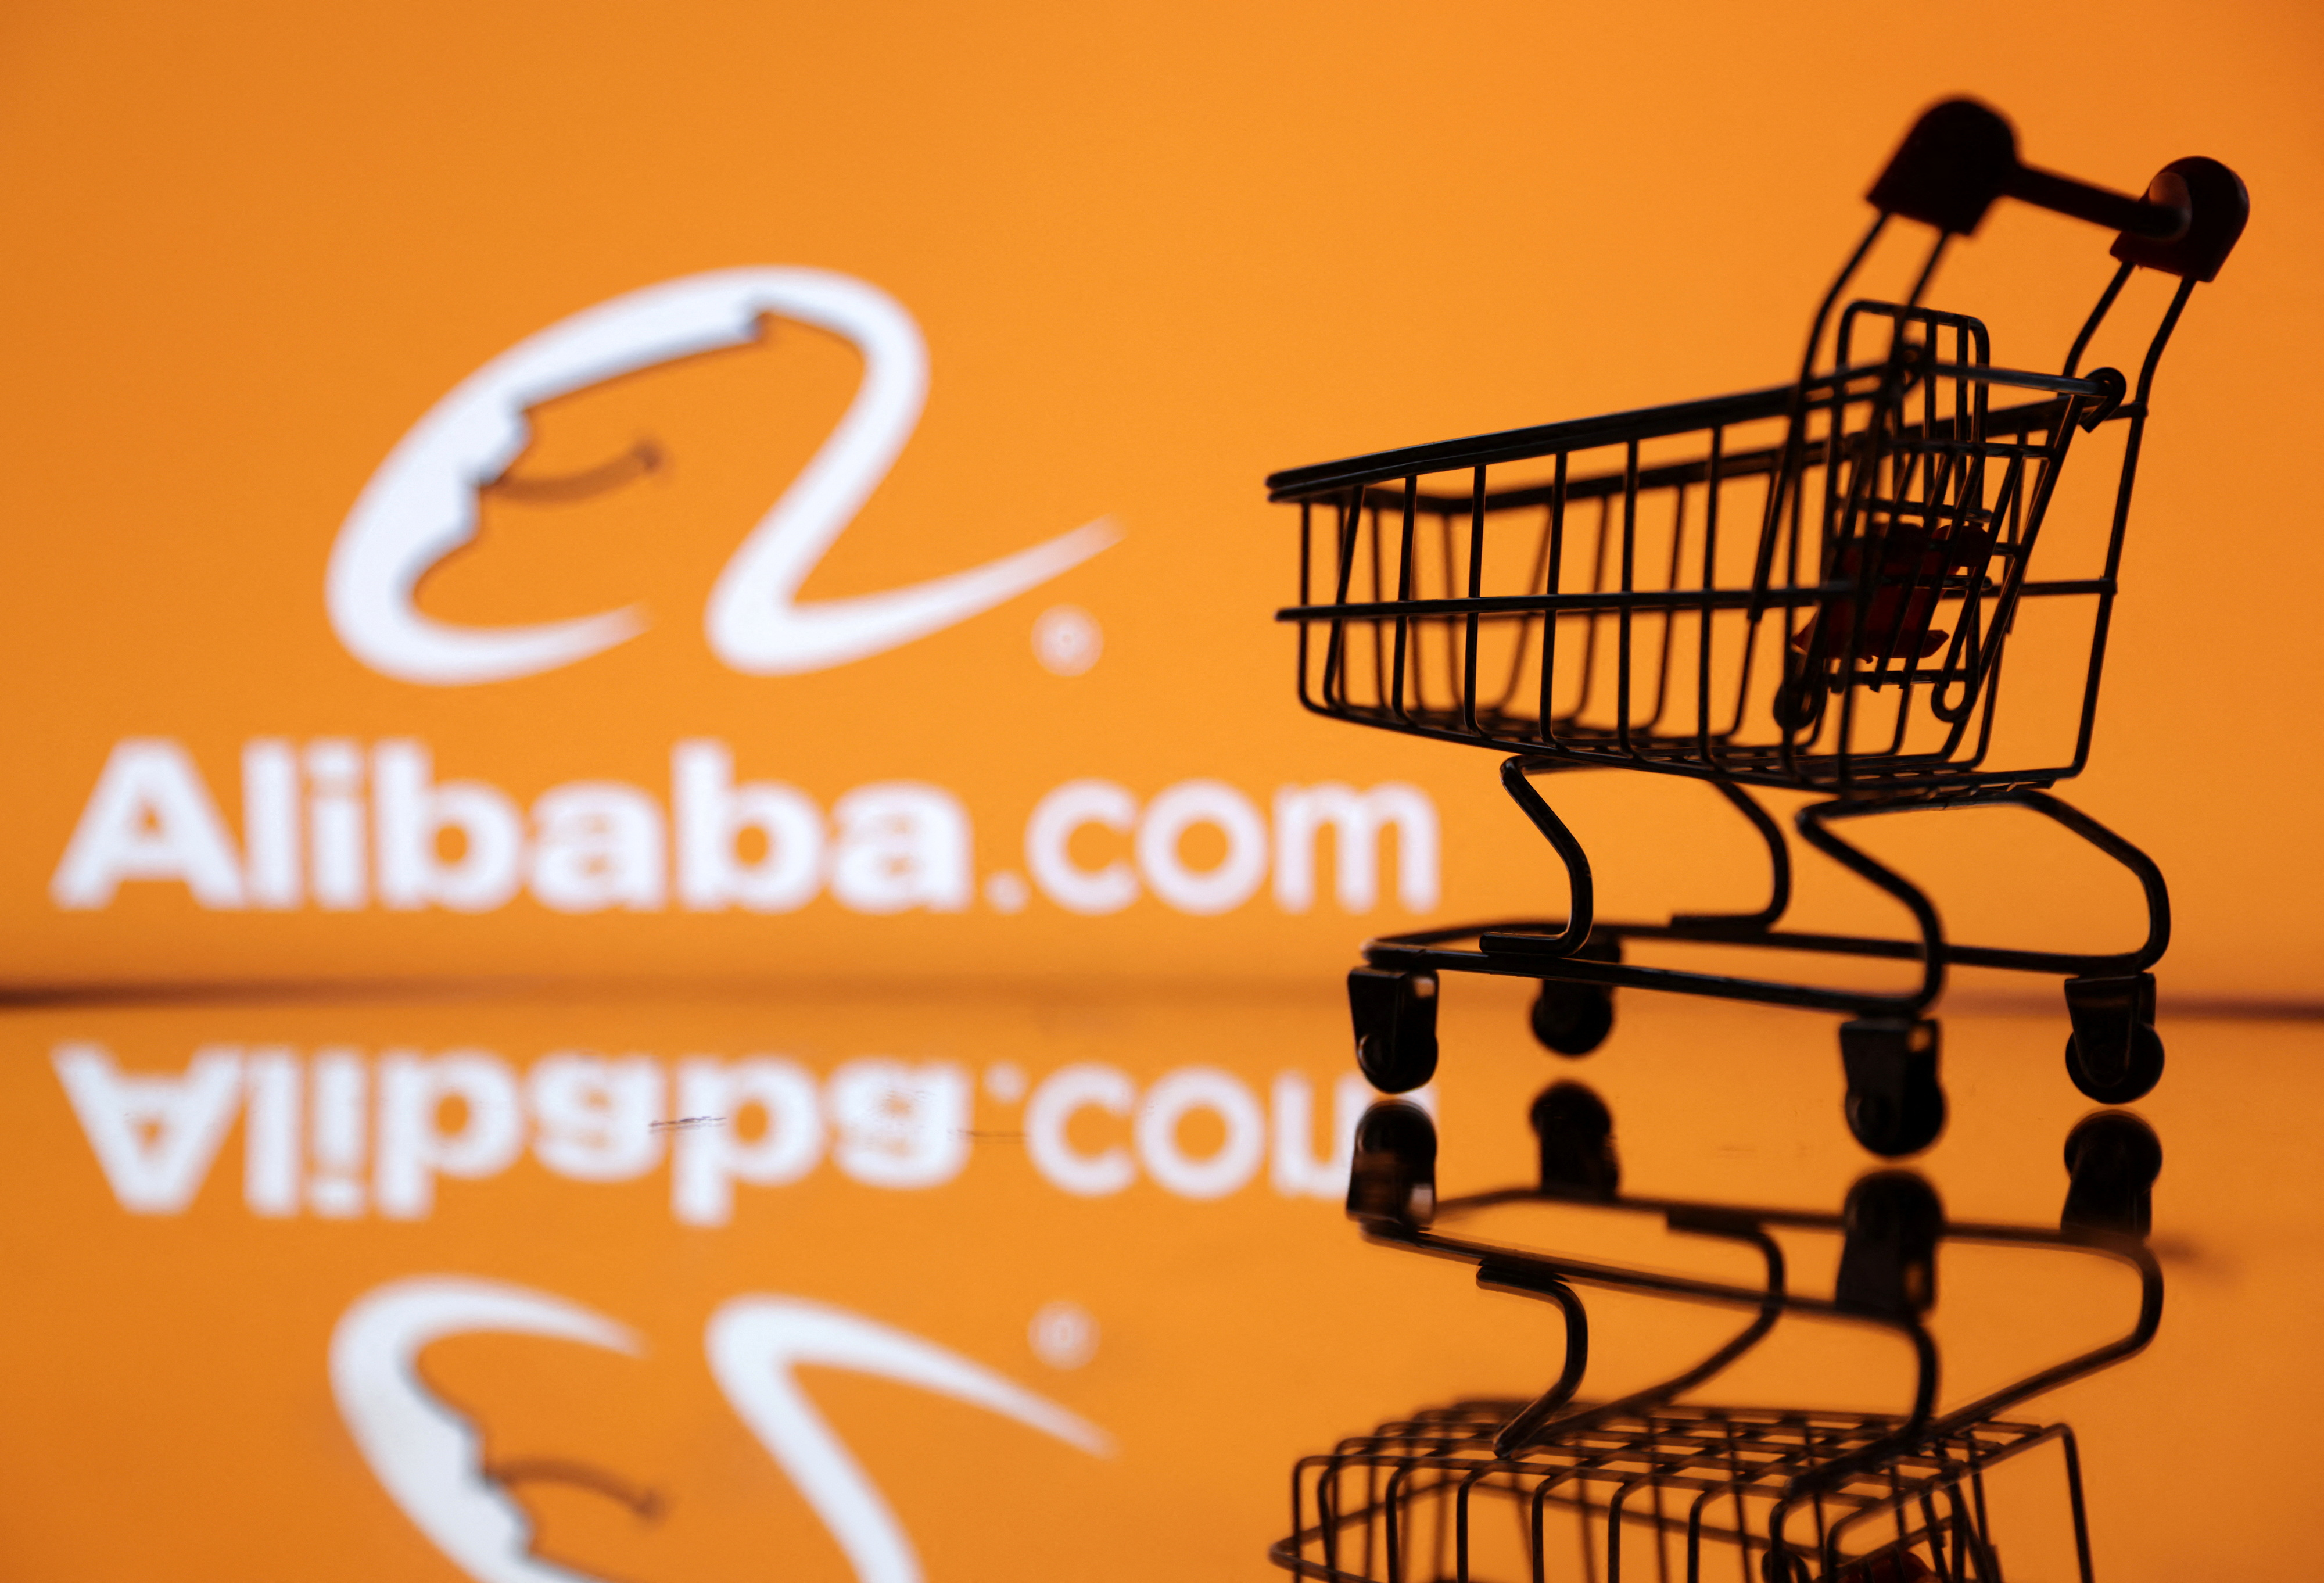 Die Abbildung zeigt das Alibaba-Logo